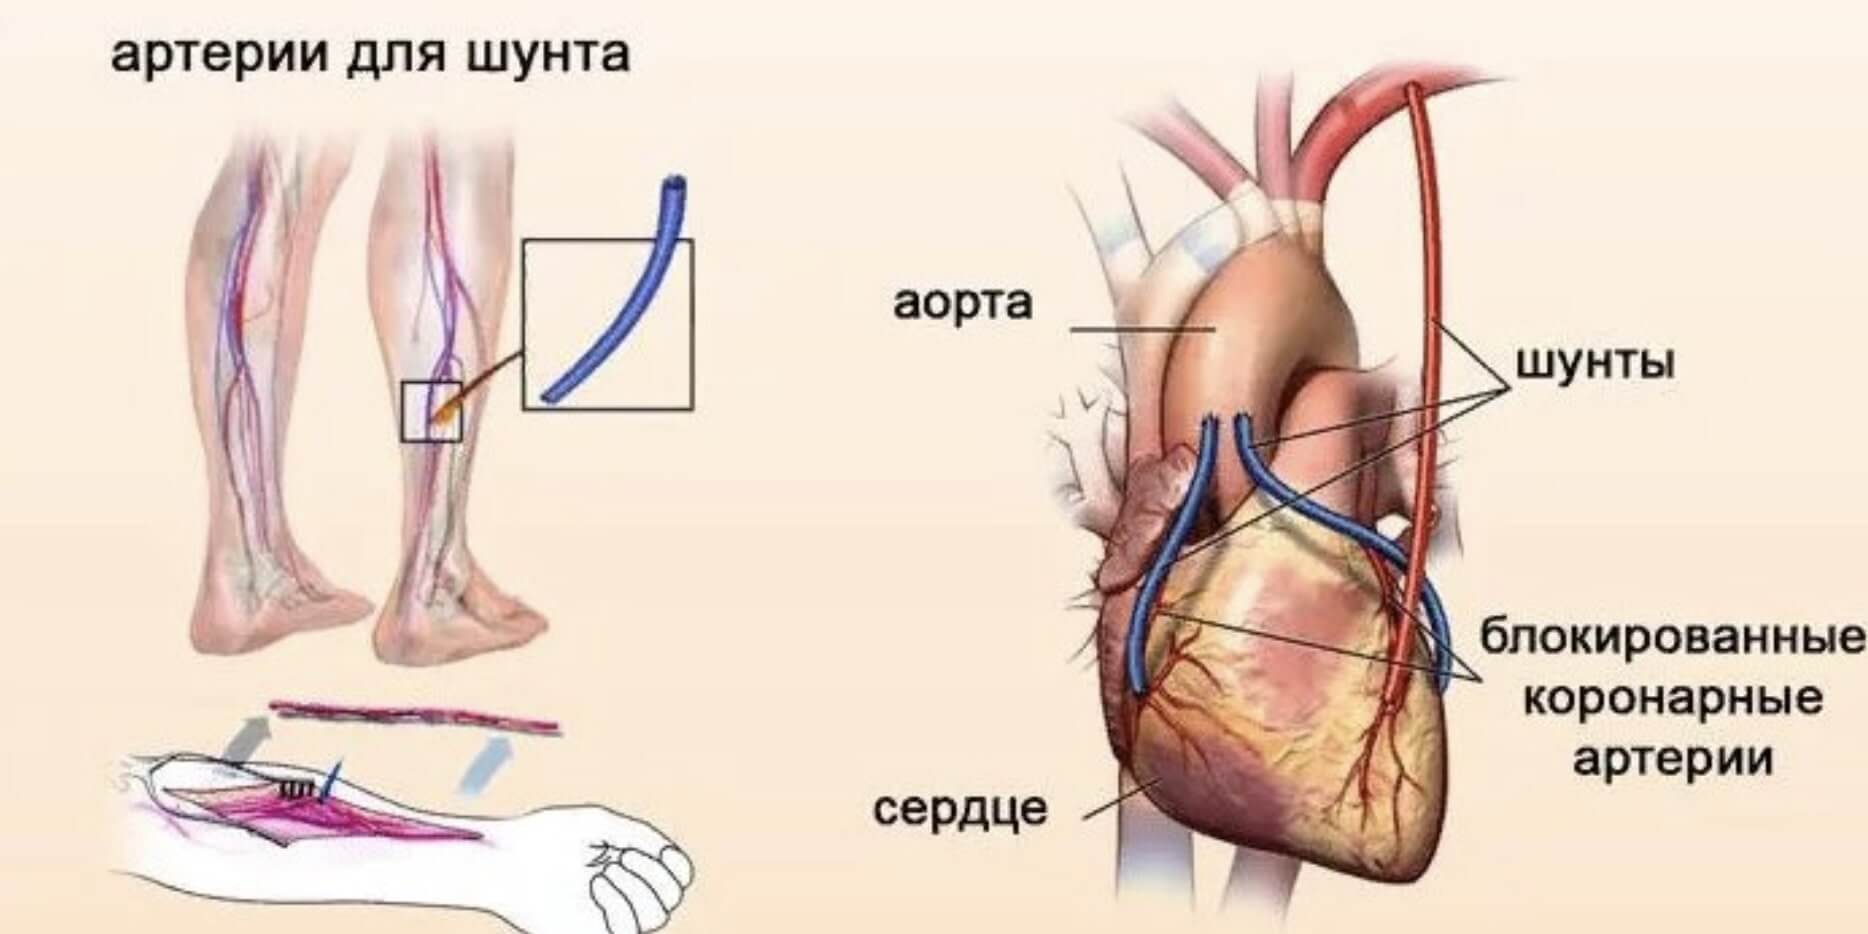 Что такое шунтирование сердца и сосудов. Аортокоронарное шунтирование схема операции. Шунтирование сосудов при инфаркте миокарда. Коронарное шунтирование сосудов сердца. Операция шунтирование сердца инфаркт.